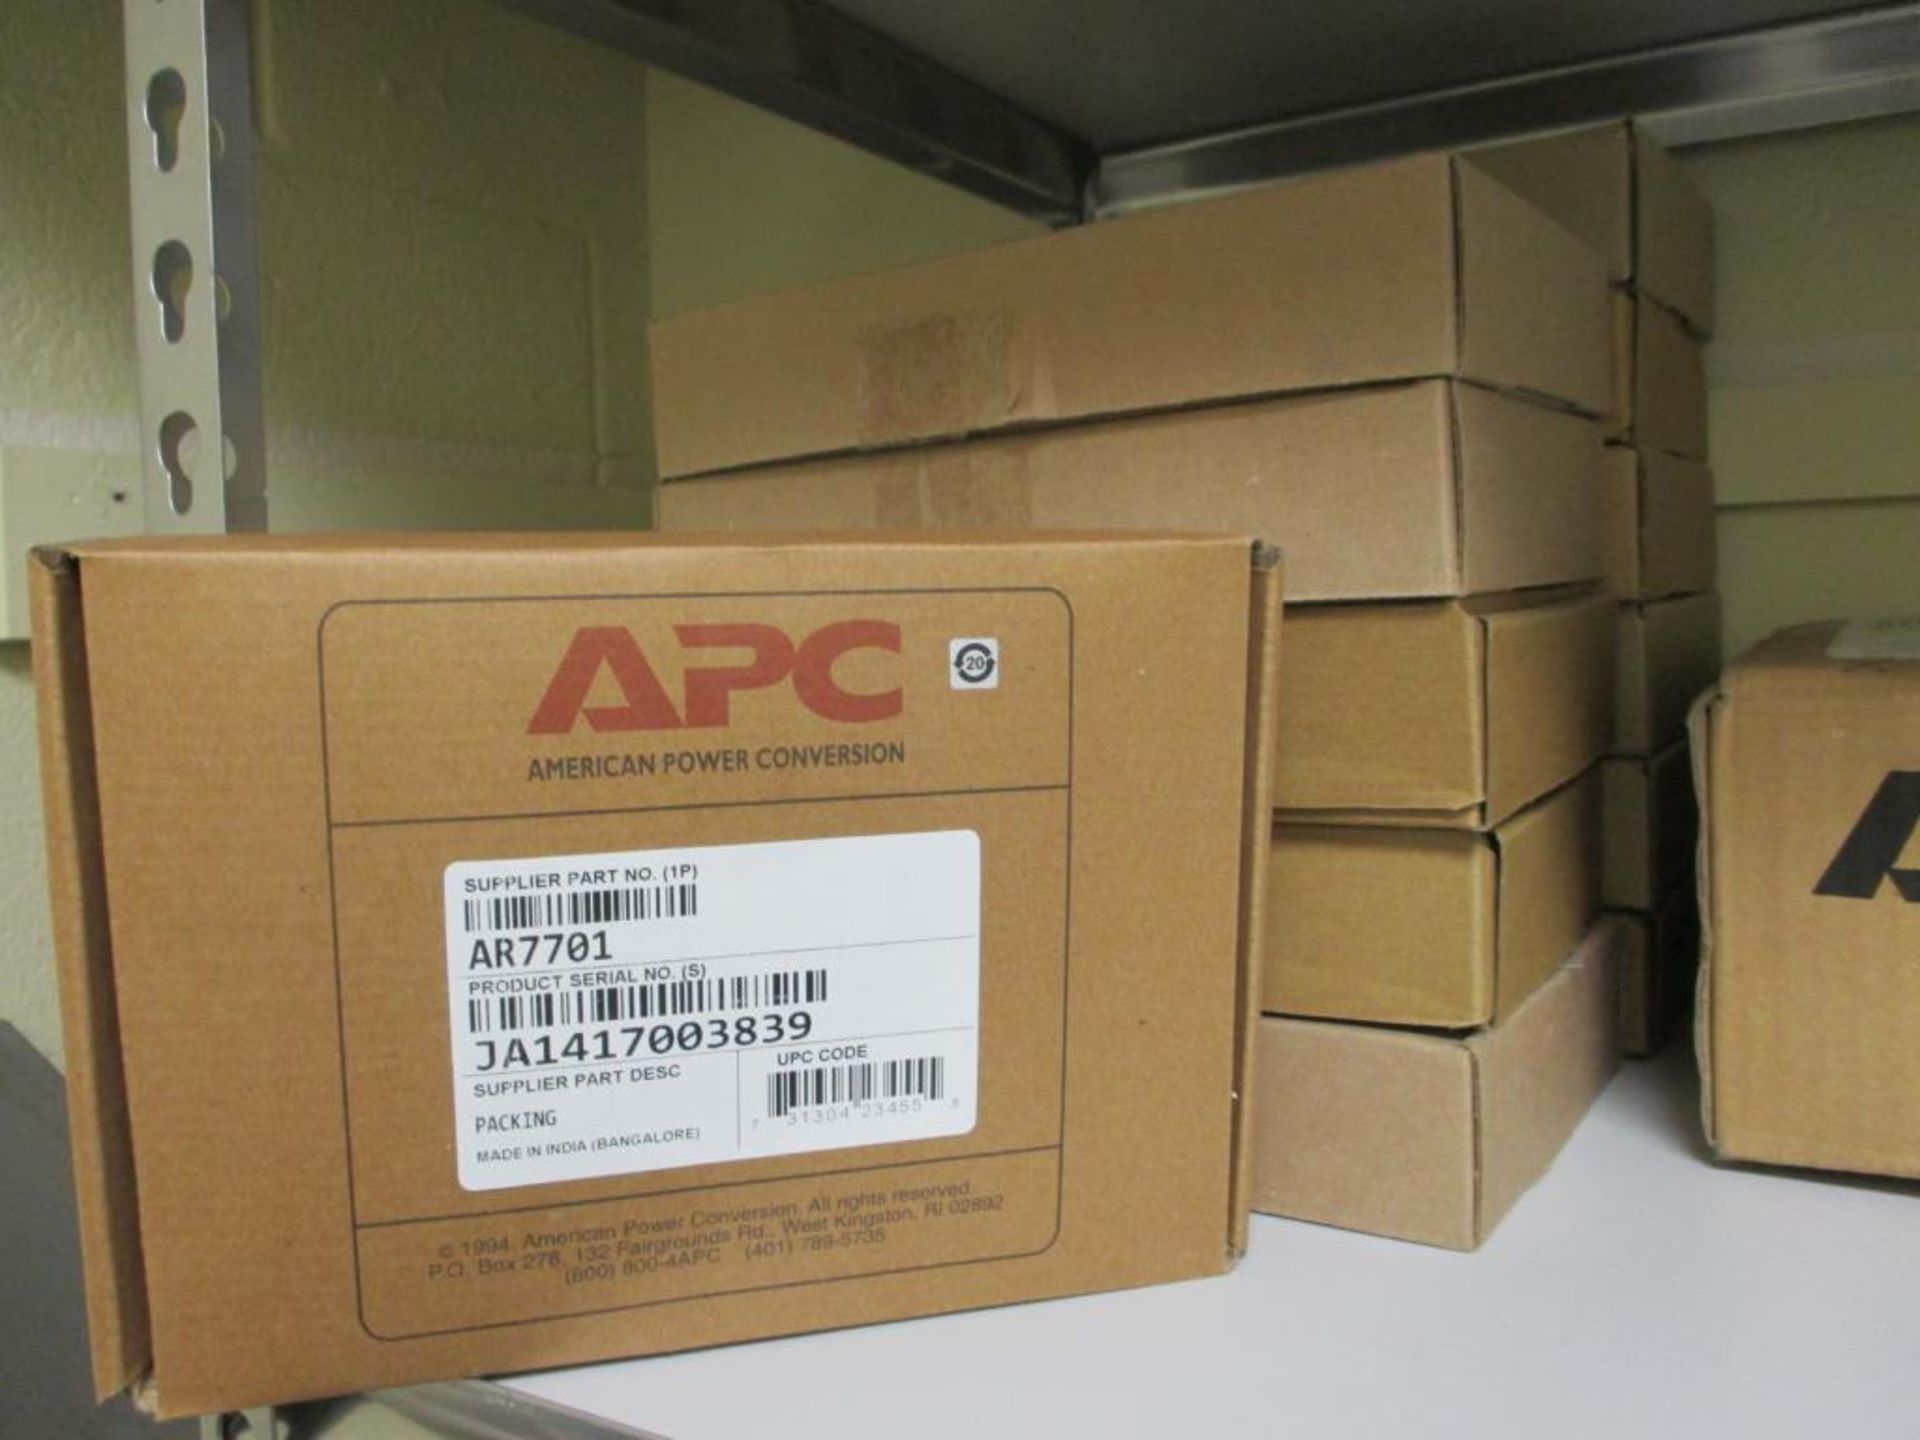 APC Parts & Accessories - Image 5 of 15